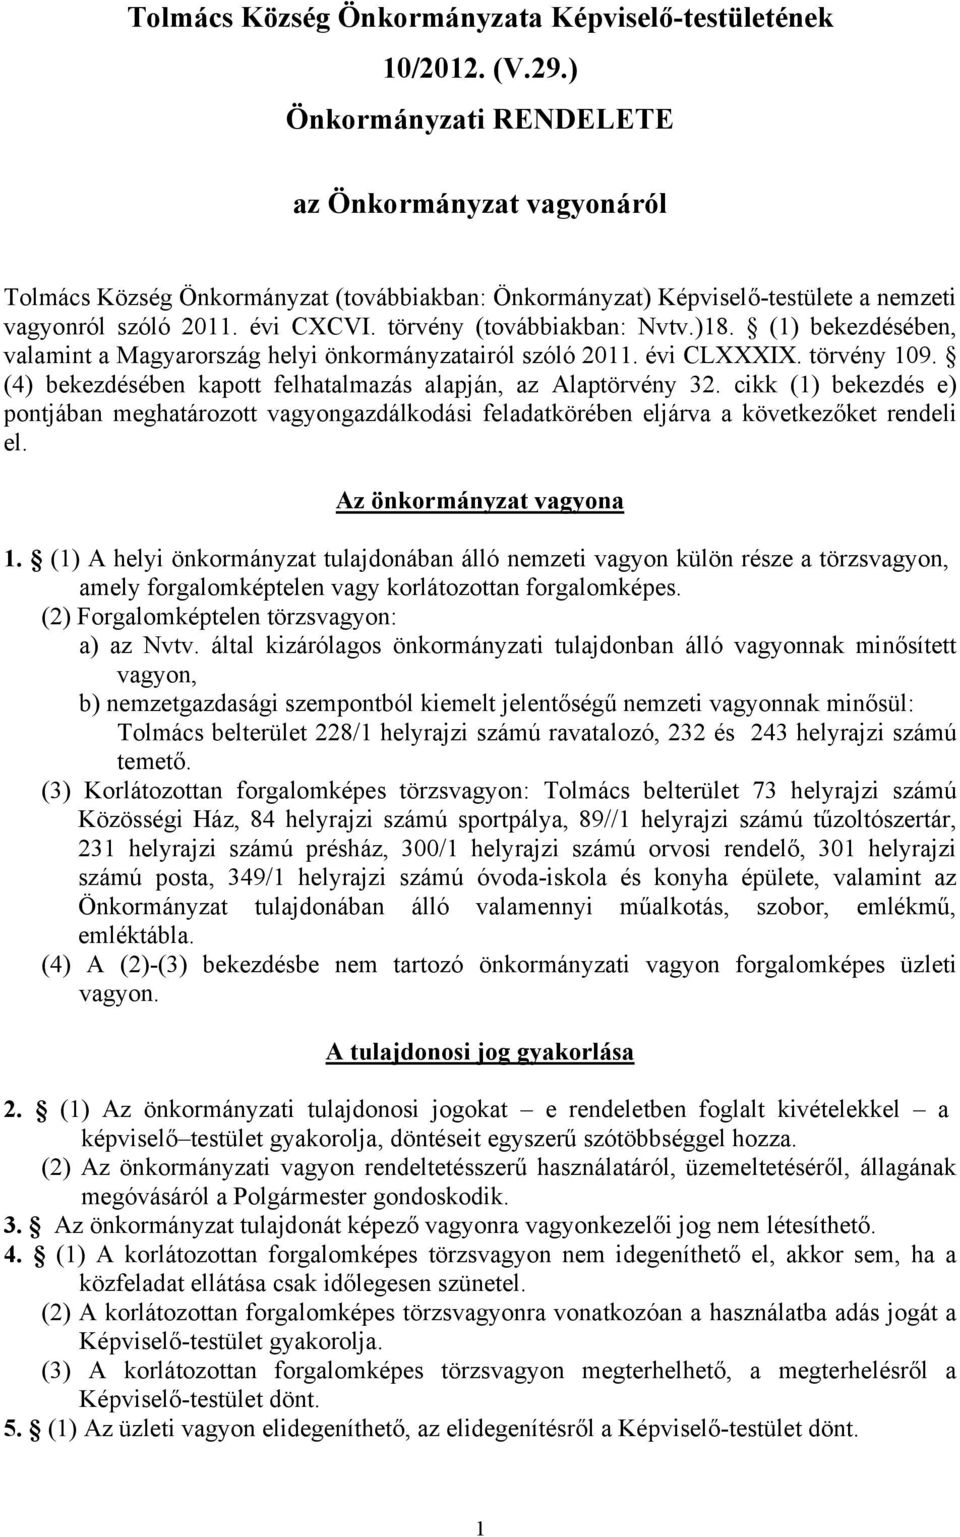 törvény (továbbiakban: Nvtv.)18. (1) bekezdésében, valamint a Magyarország helyi önkormányzatairól szóló 2011. évi CLXXXIX. törvény 109.